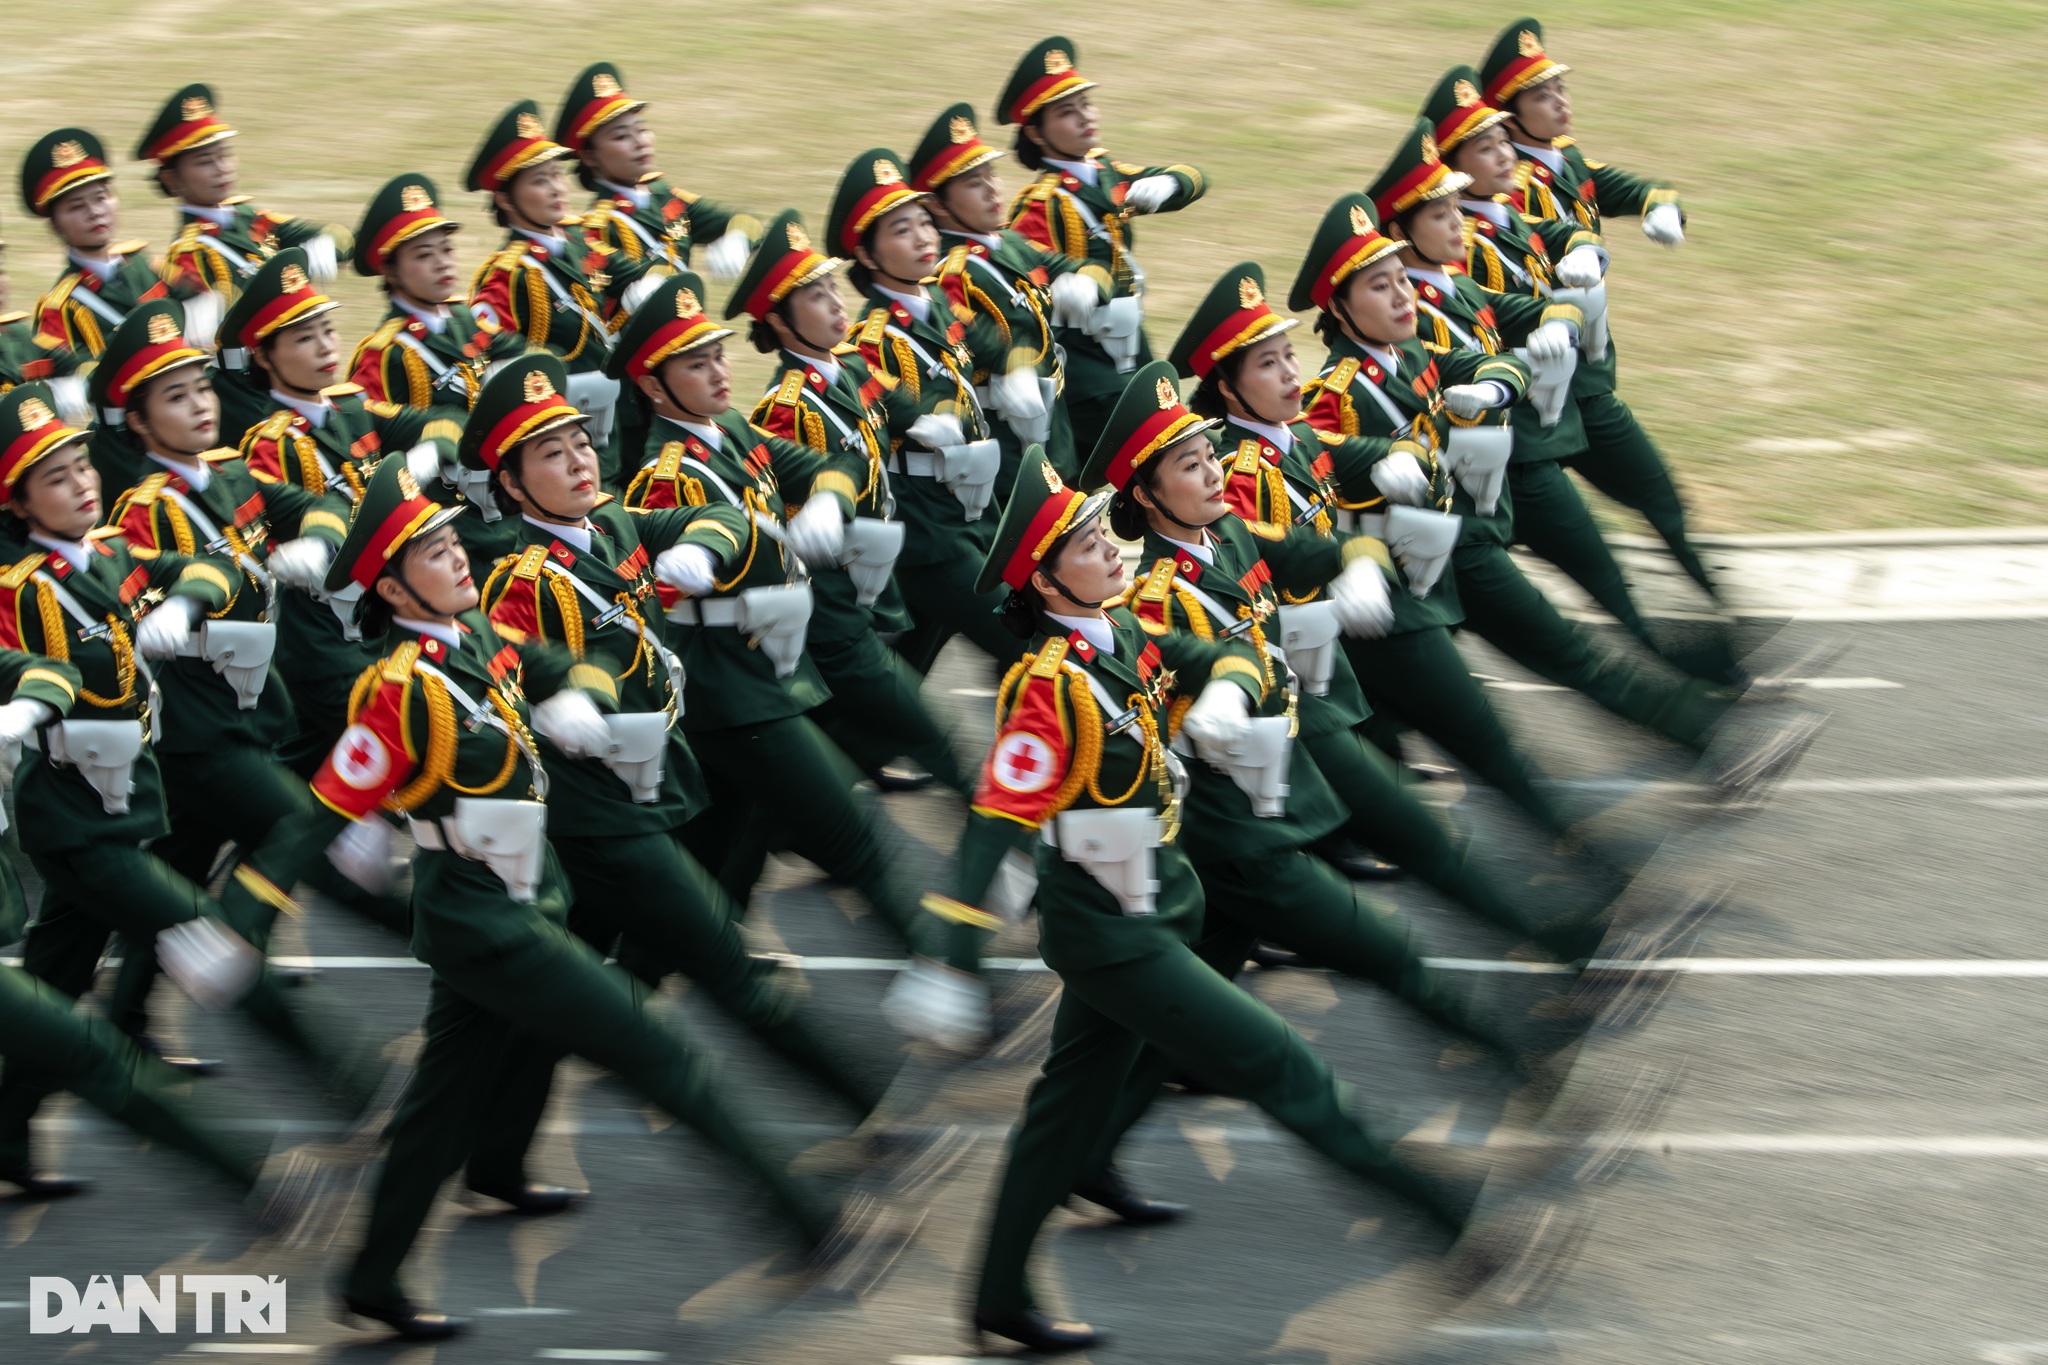 View - Ngắm những "bông hồng thép" trong lễ Tổng duyệt diễu binh ở Điện Biên | Báo Dân trí